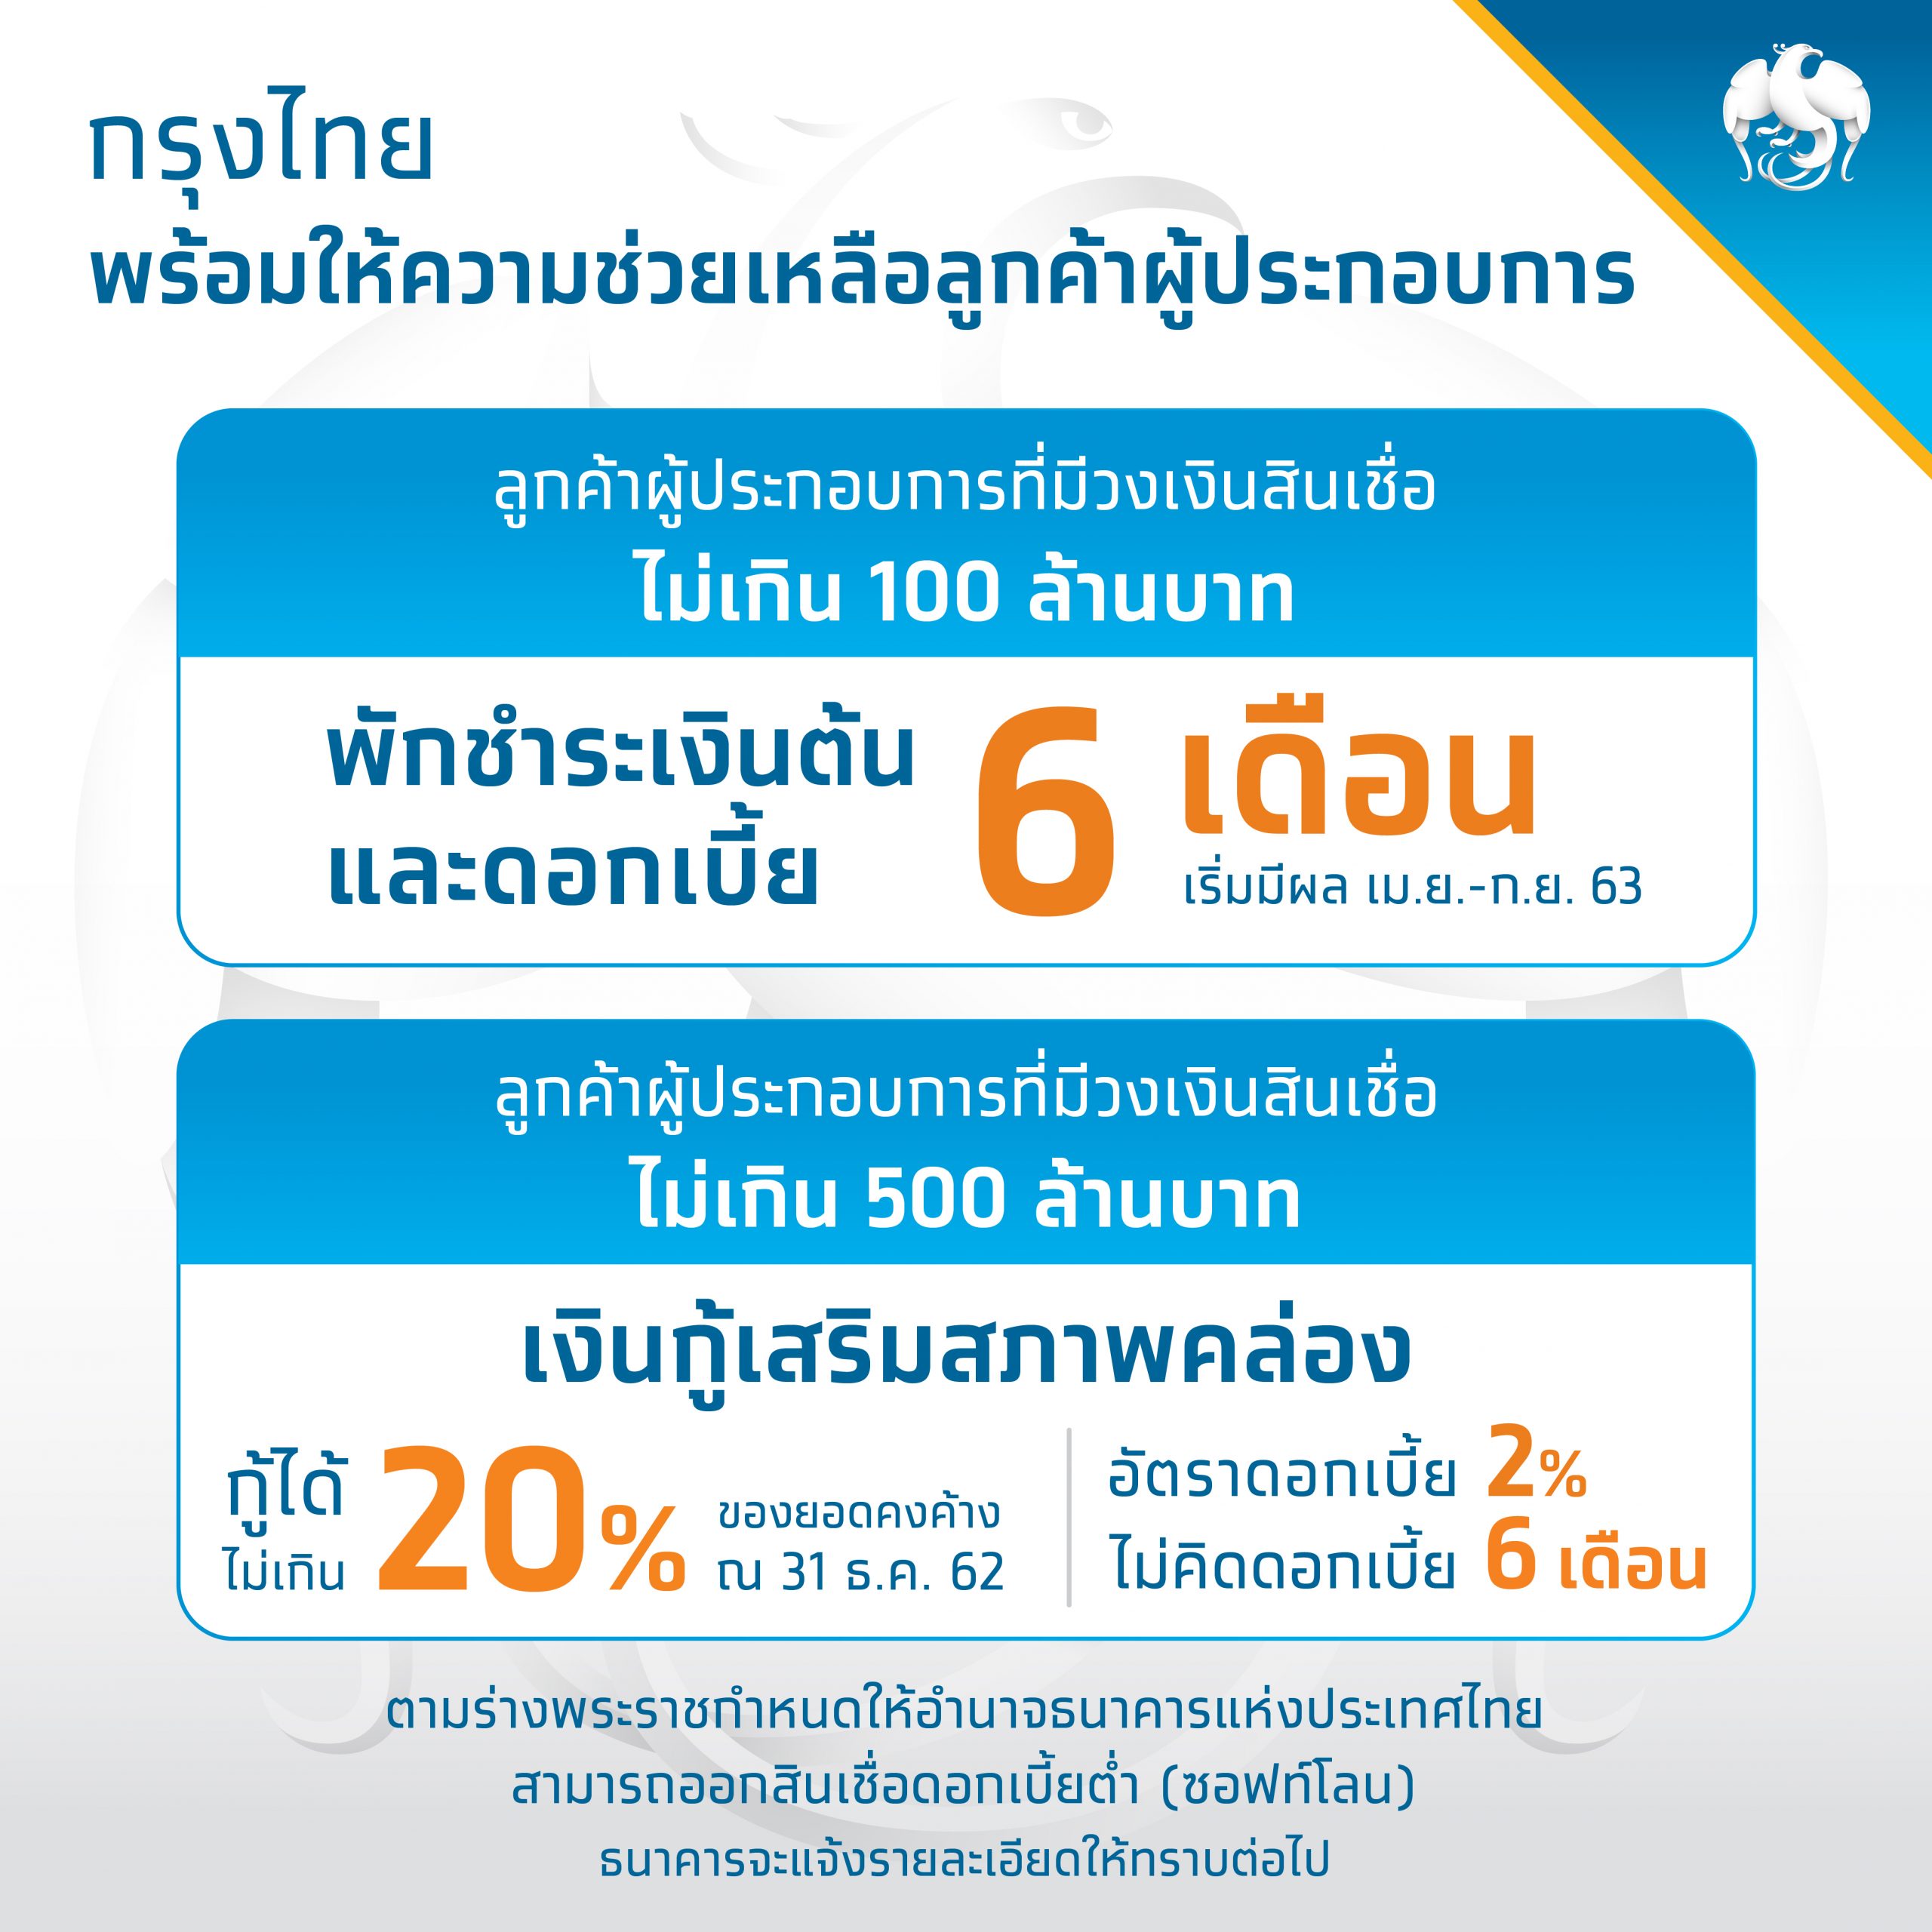 กรุงไทยพักหนี้เงินต้น-ดอกเบี้ย 6 เดือน พร้อมปล่อยกู้ 2% ต่อปี ปลอดดอกเบี้ย 6 เดือนแรก